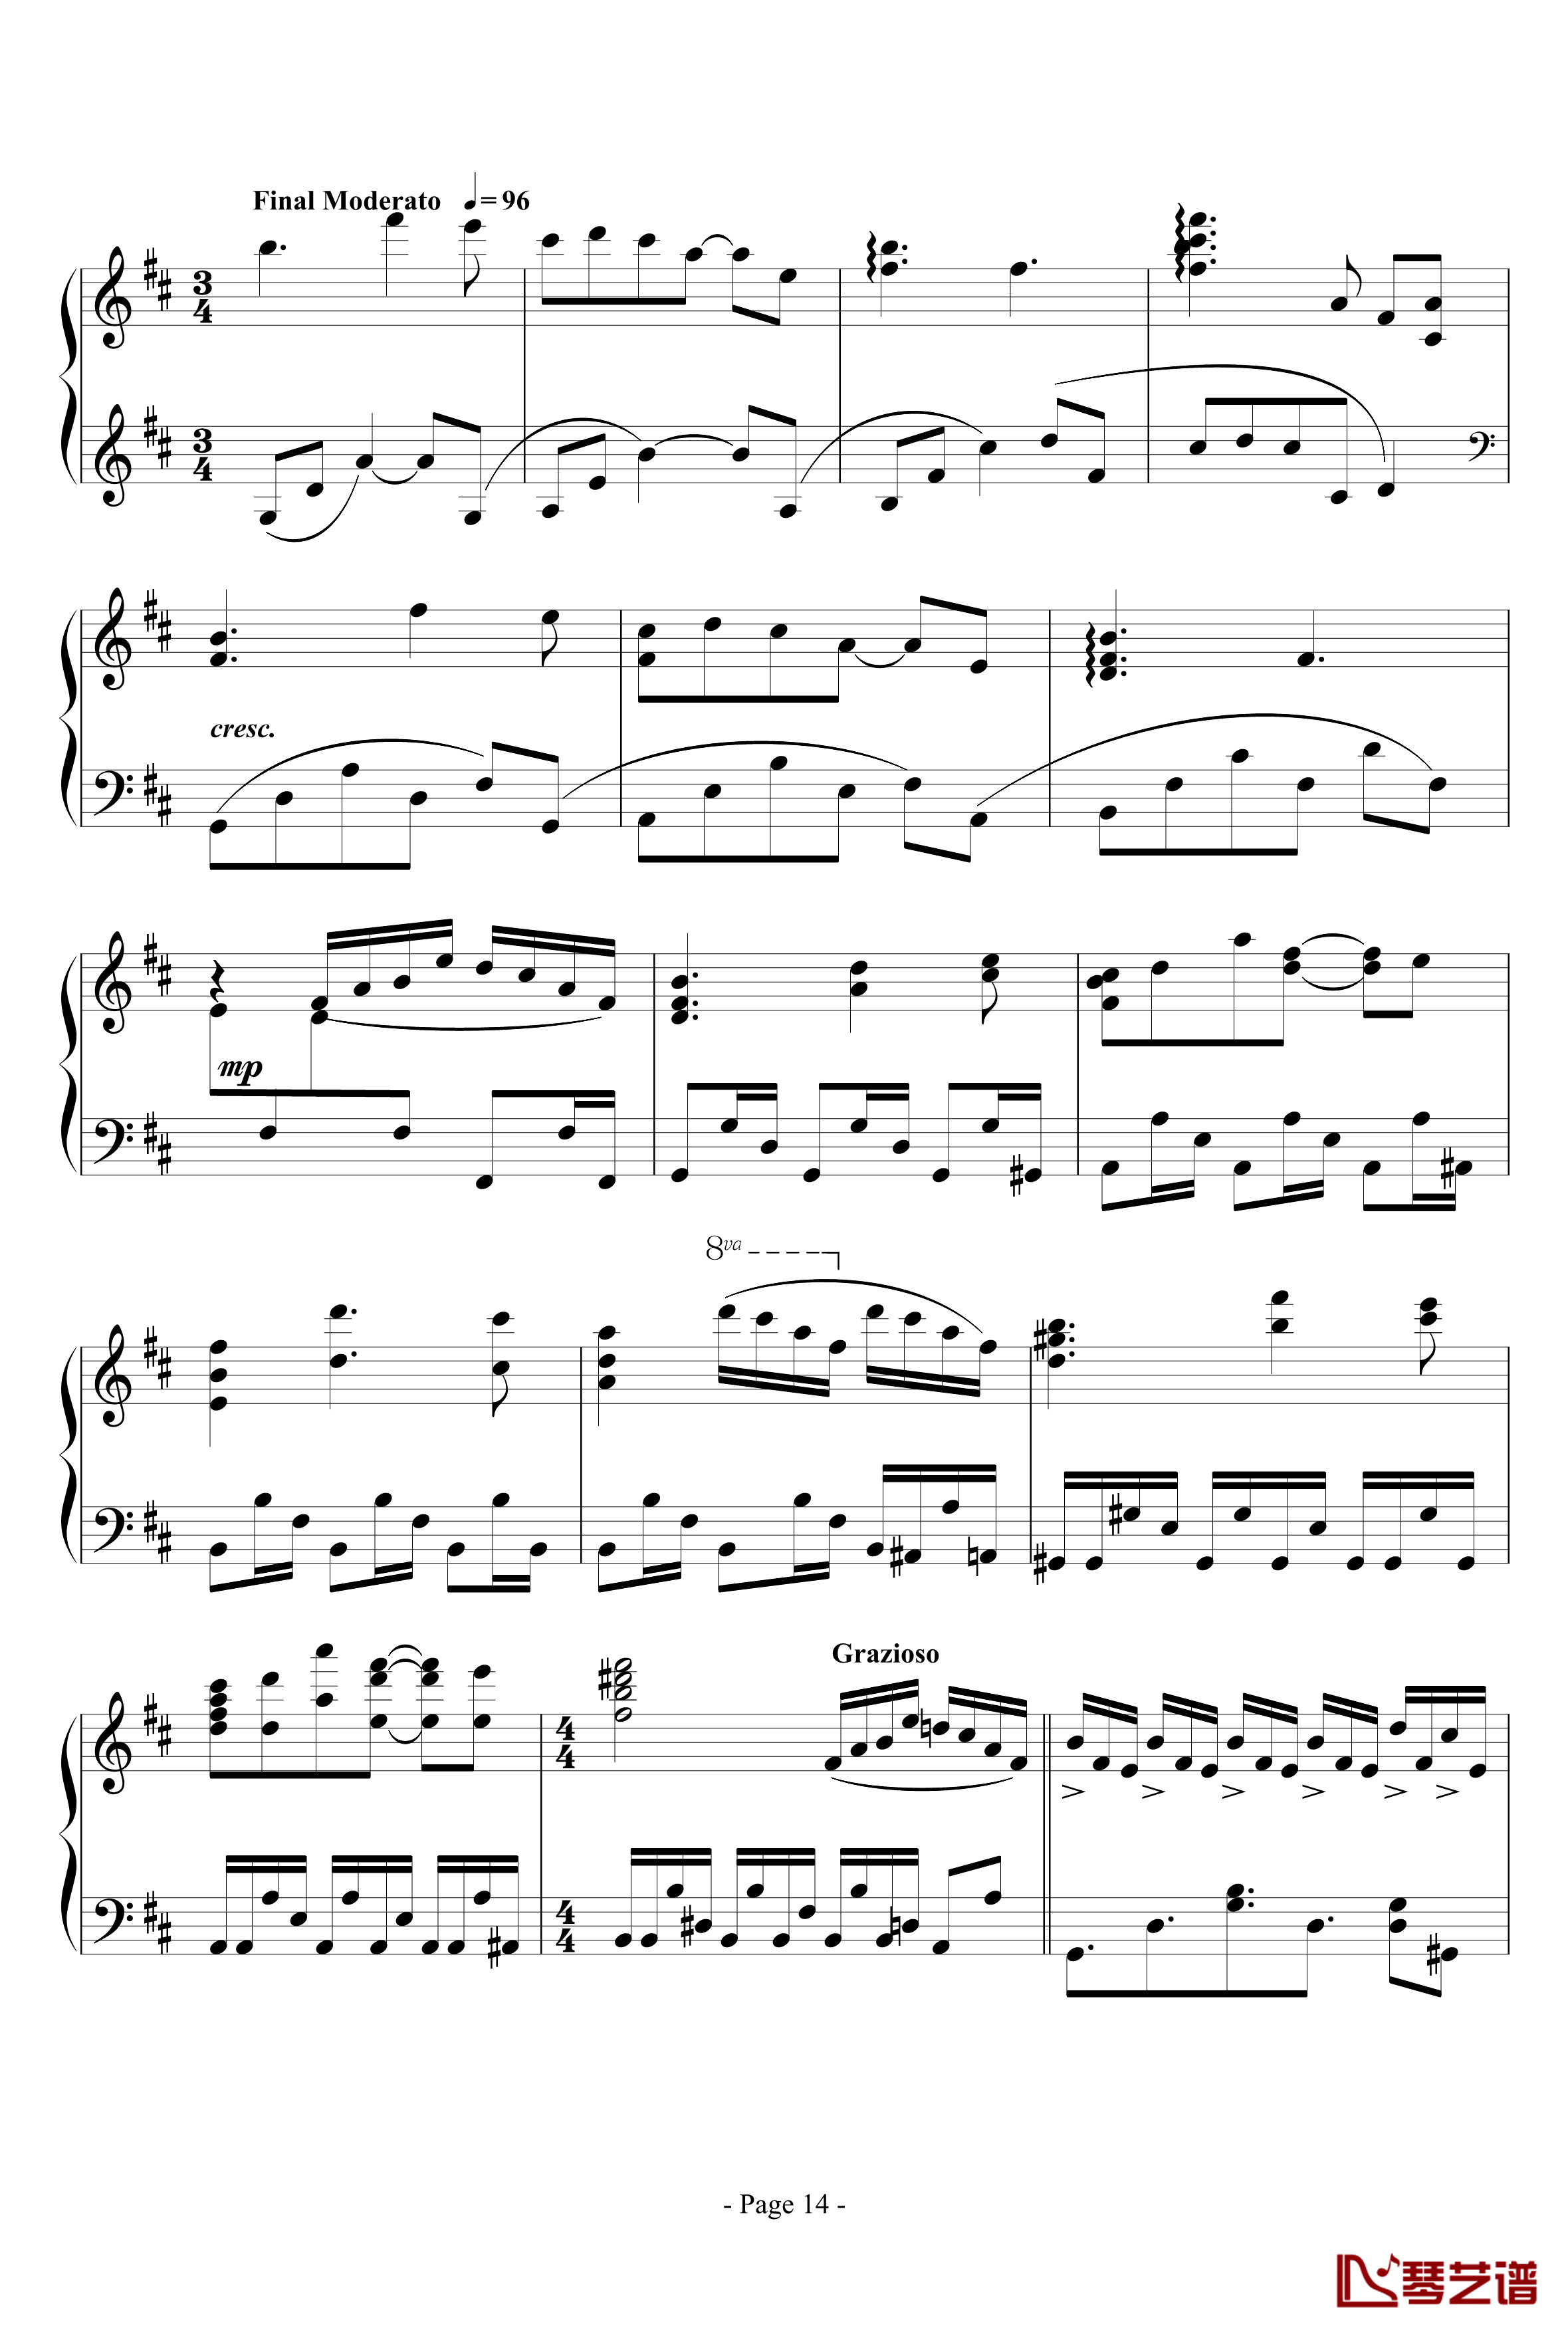 思绪之舞钢琴谱-lujianxiang555